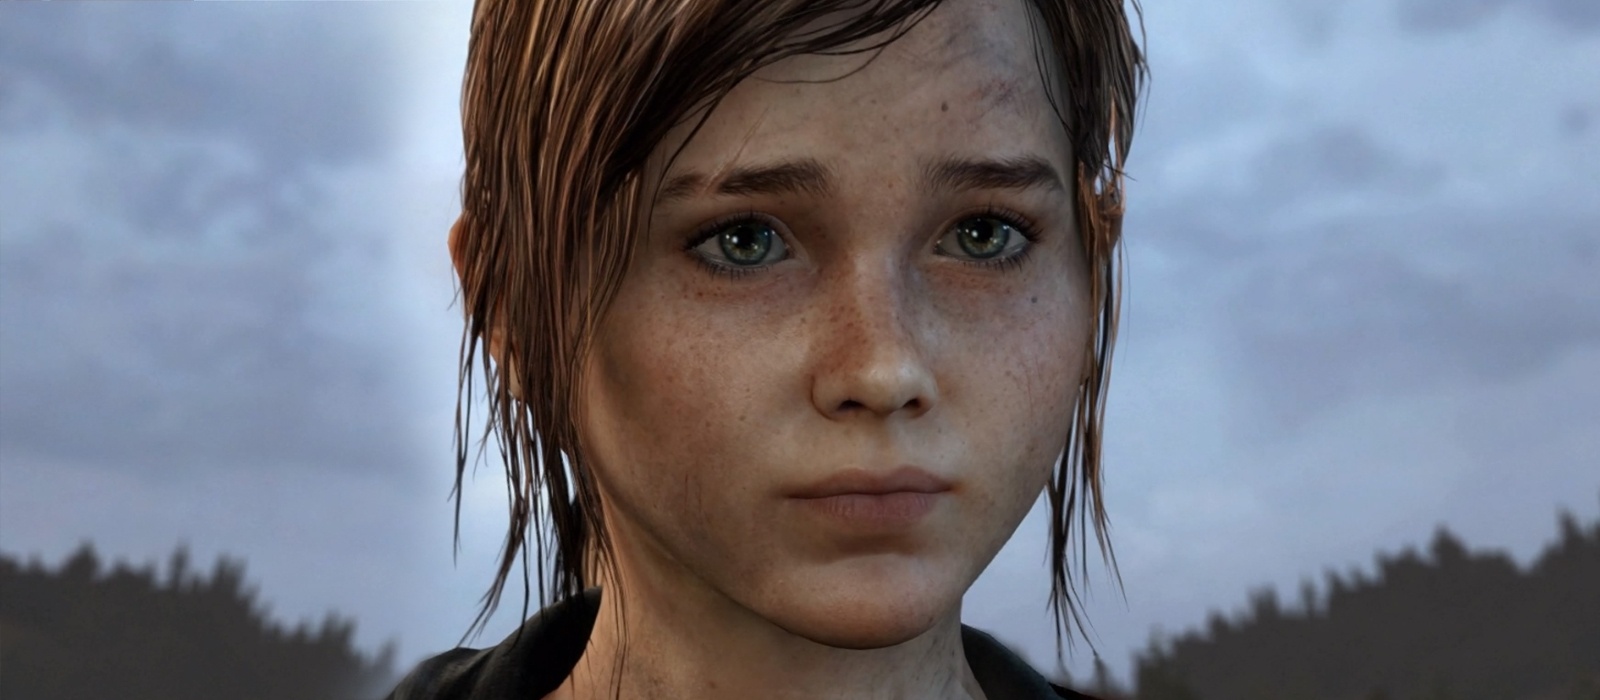 Девушка очень похоже закосплеила юную Элли из The Last of Us и попала в тренды